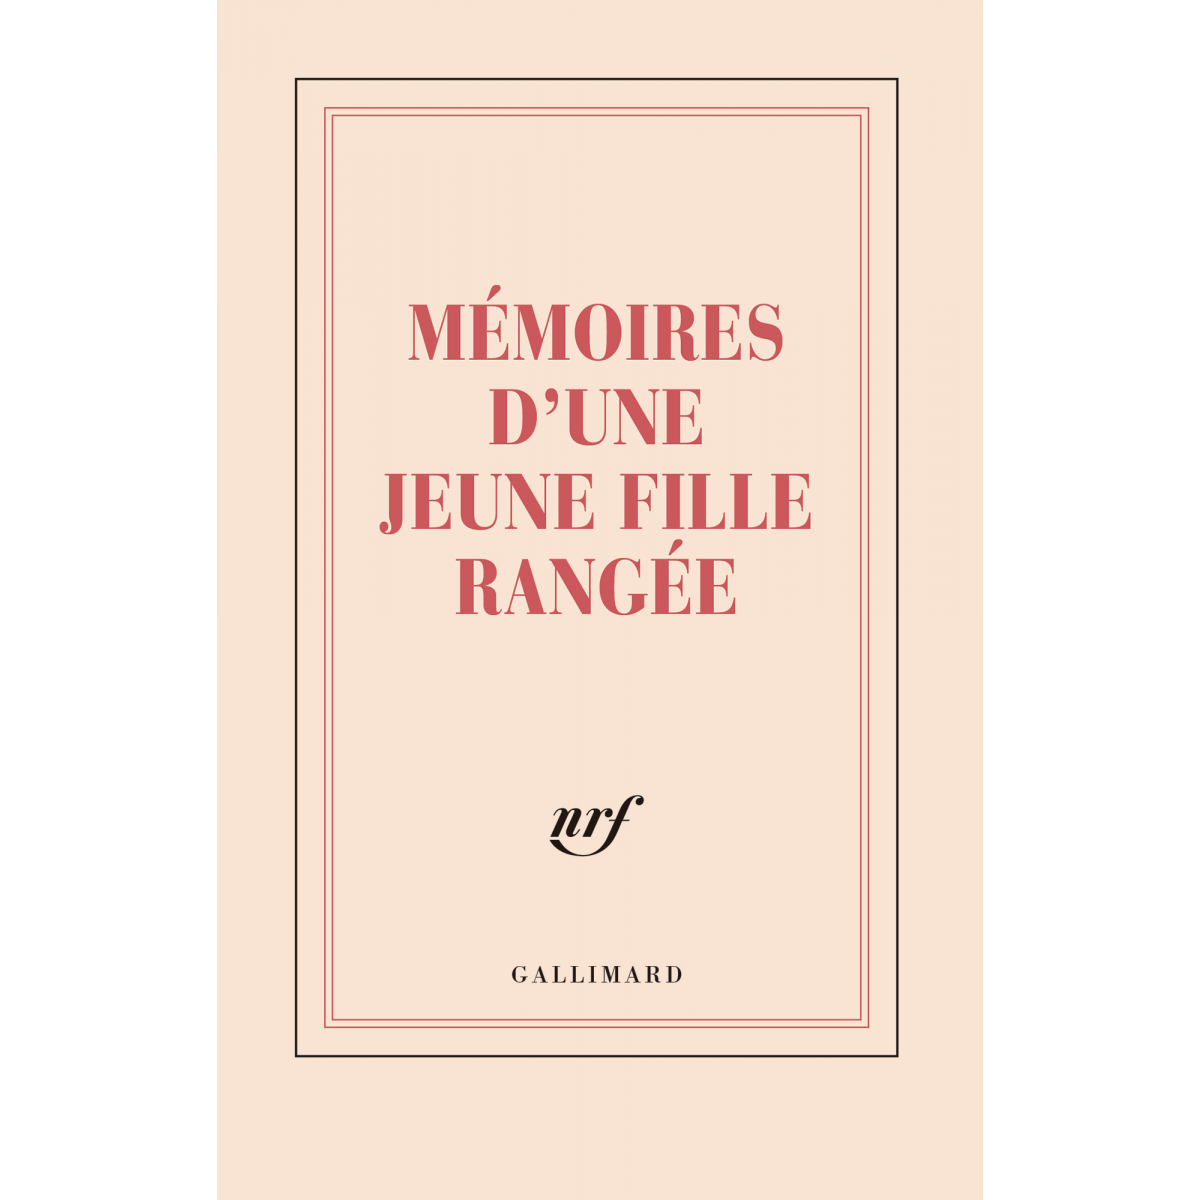 Mémoires d'une jeune fille rangée » (grand carnet rigide de papeterie) -  Galerie Gallimard